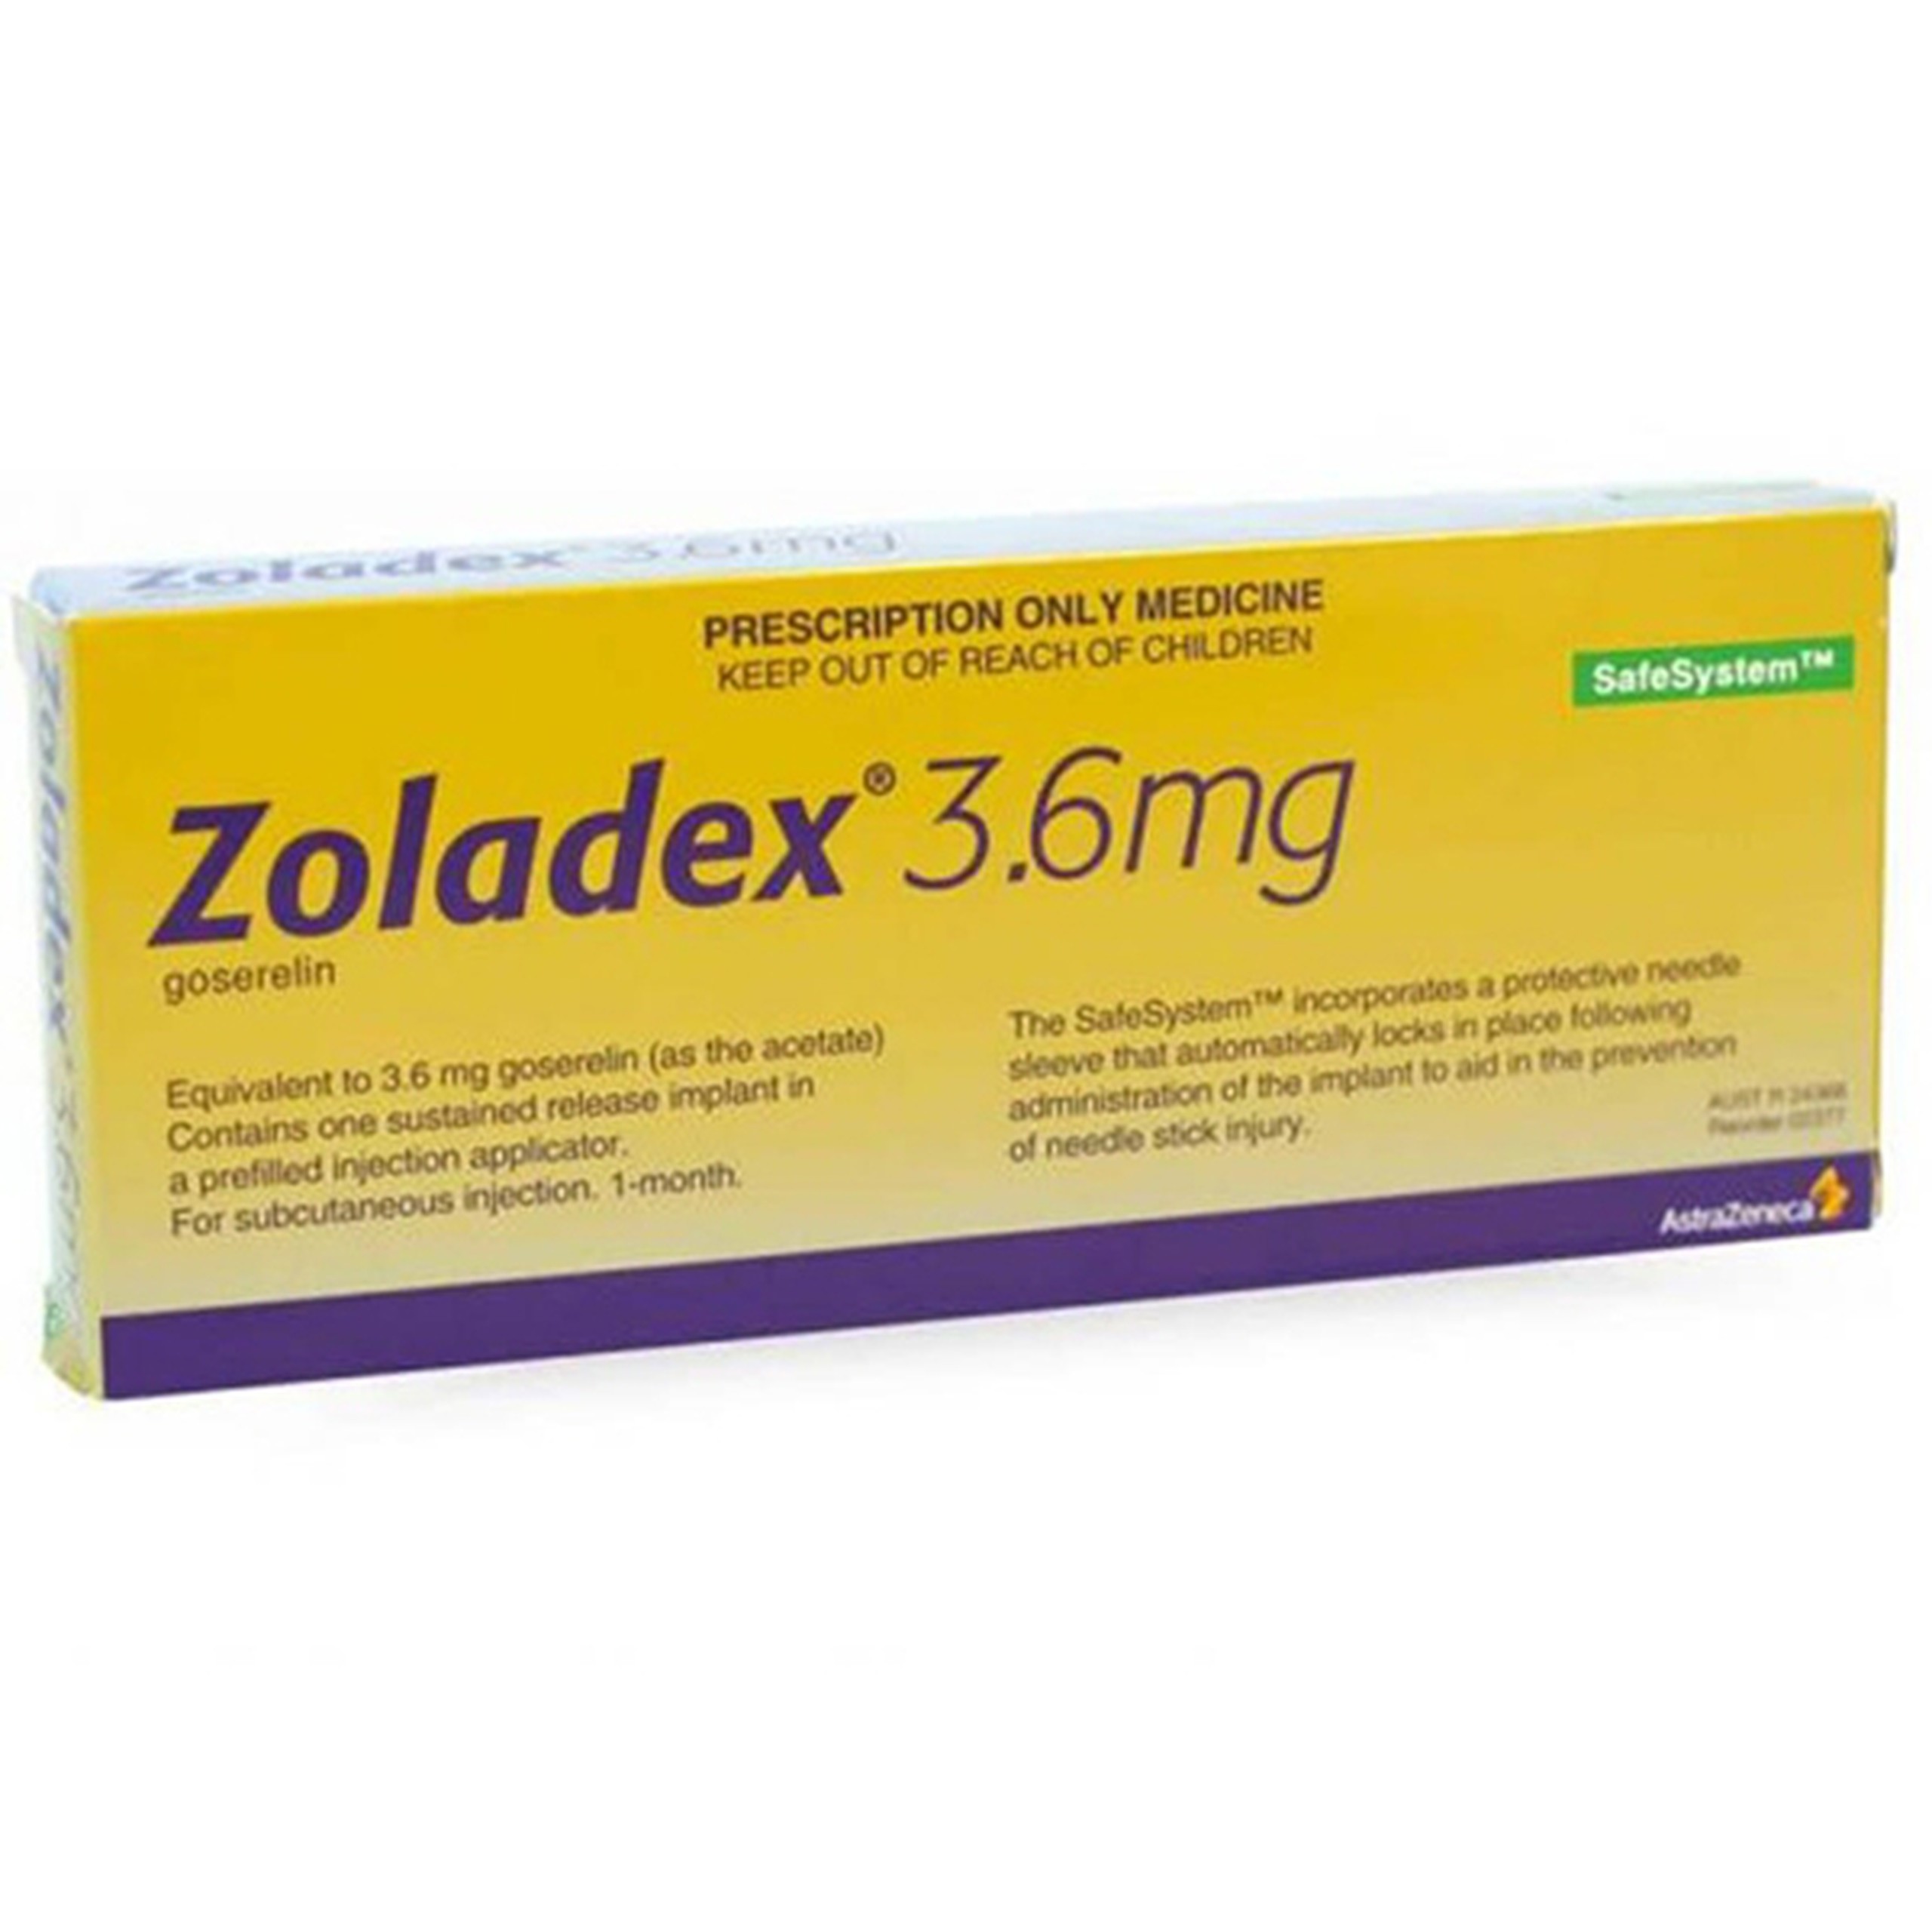 Thuốc tiêm Zoladex 3.6mg AstraZeneca kiểm soát ung thư tiền liệt tuyến (1 ống tiêm)